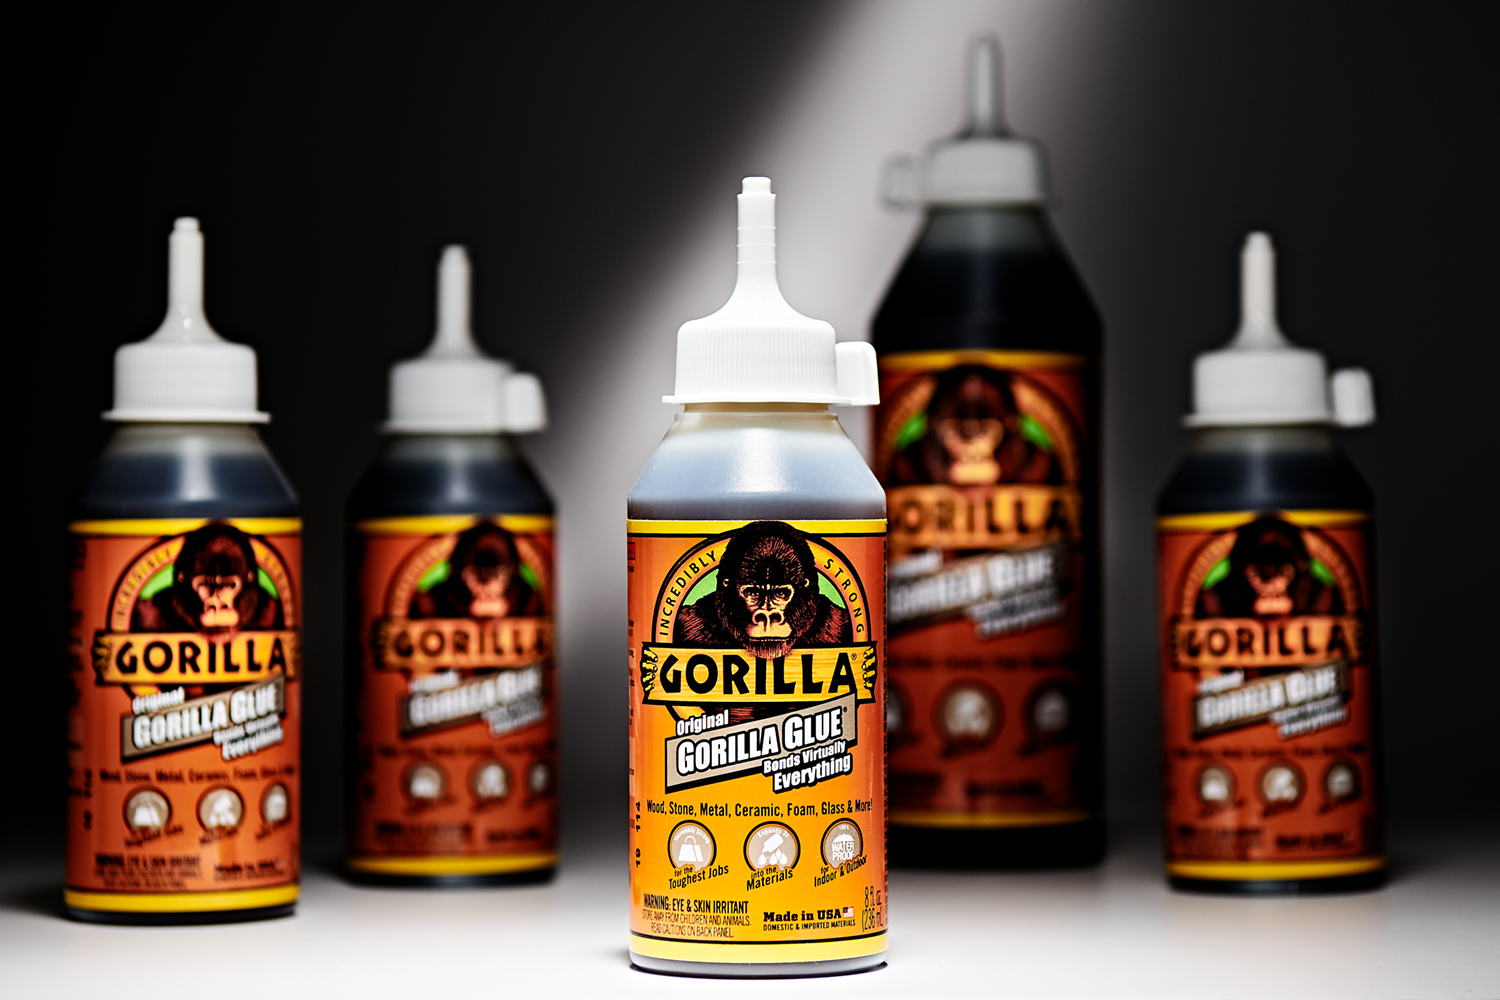 Gorilla Glue - Incredibly Strong Original Gorilla Glue